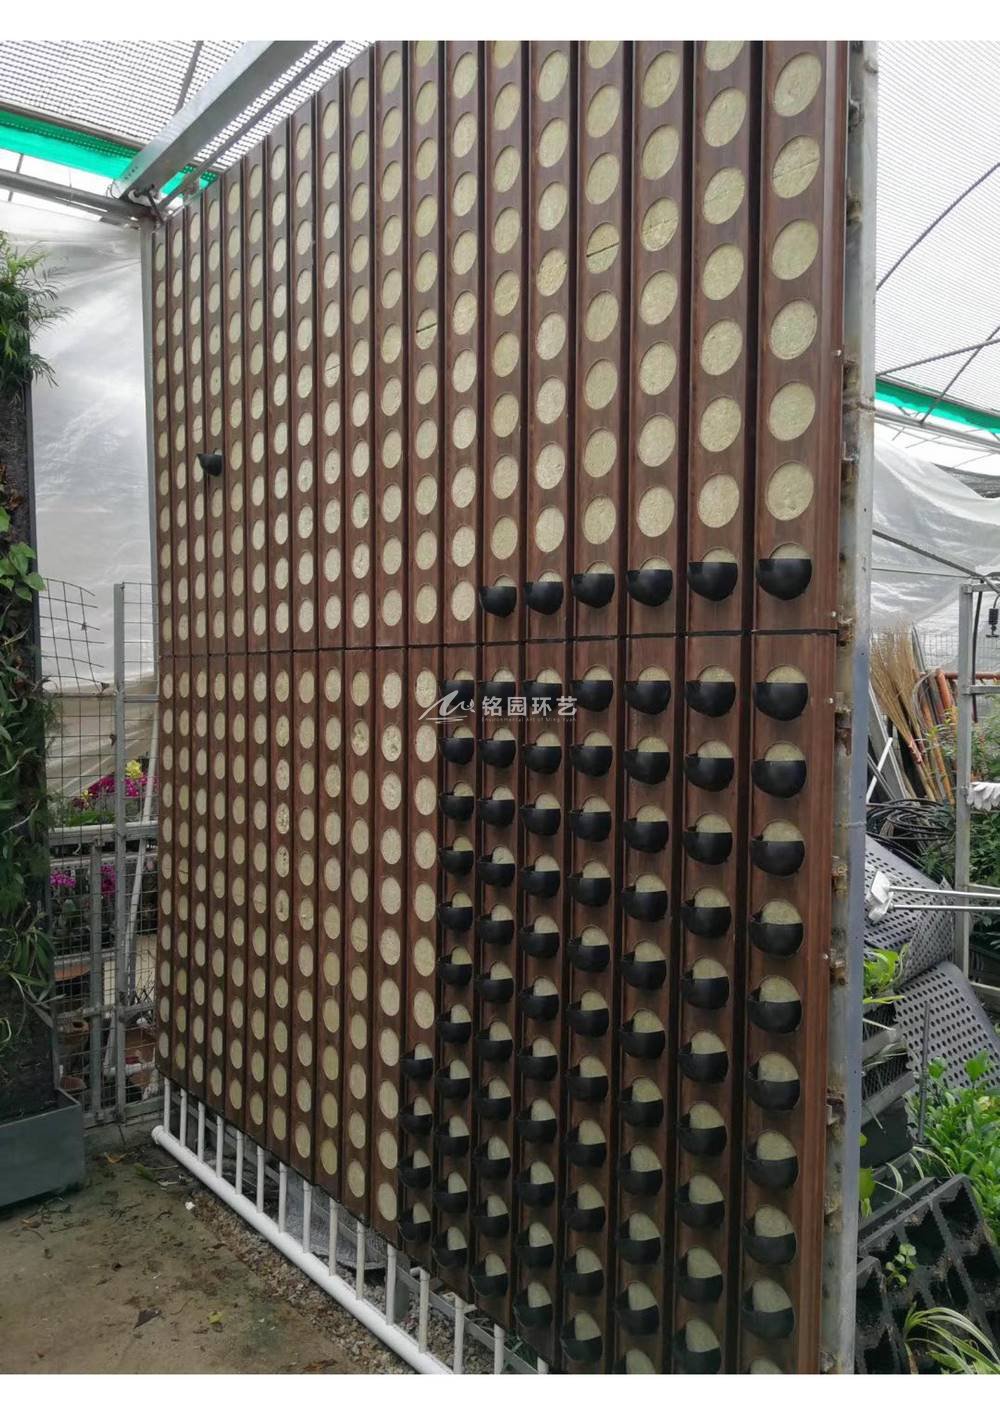 塑木通道式+岩棉植物墙容器介绍1_9.jpg